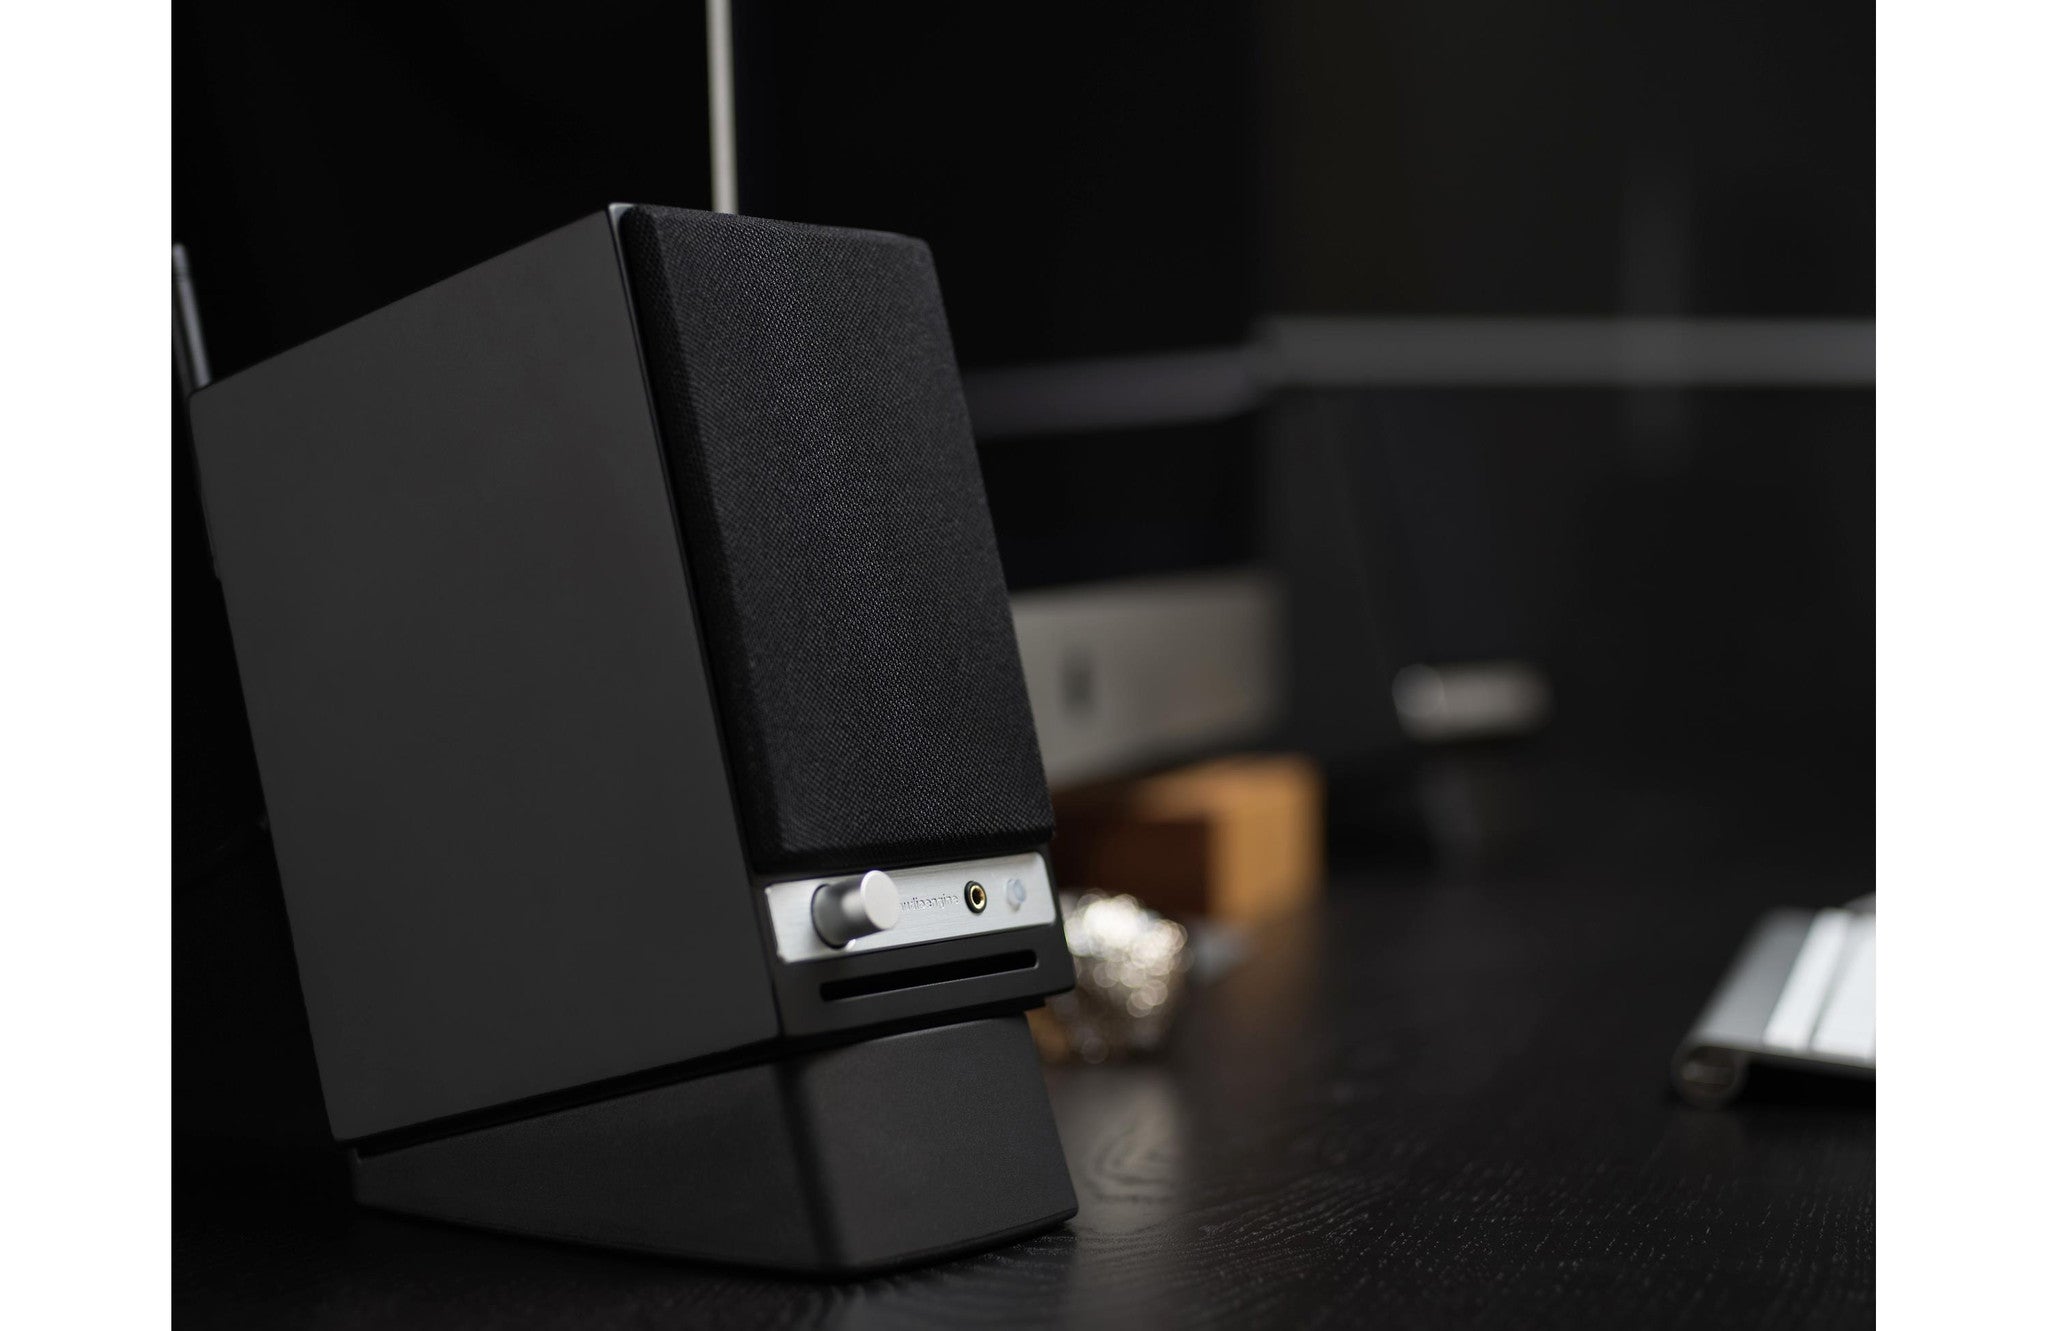 Audioengine HD3 Premium Wireless Powered Speakers - BLACK